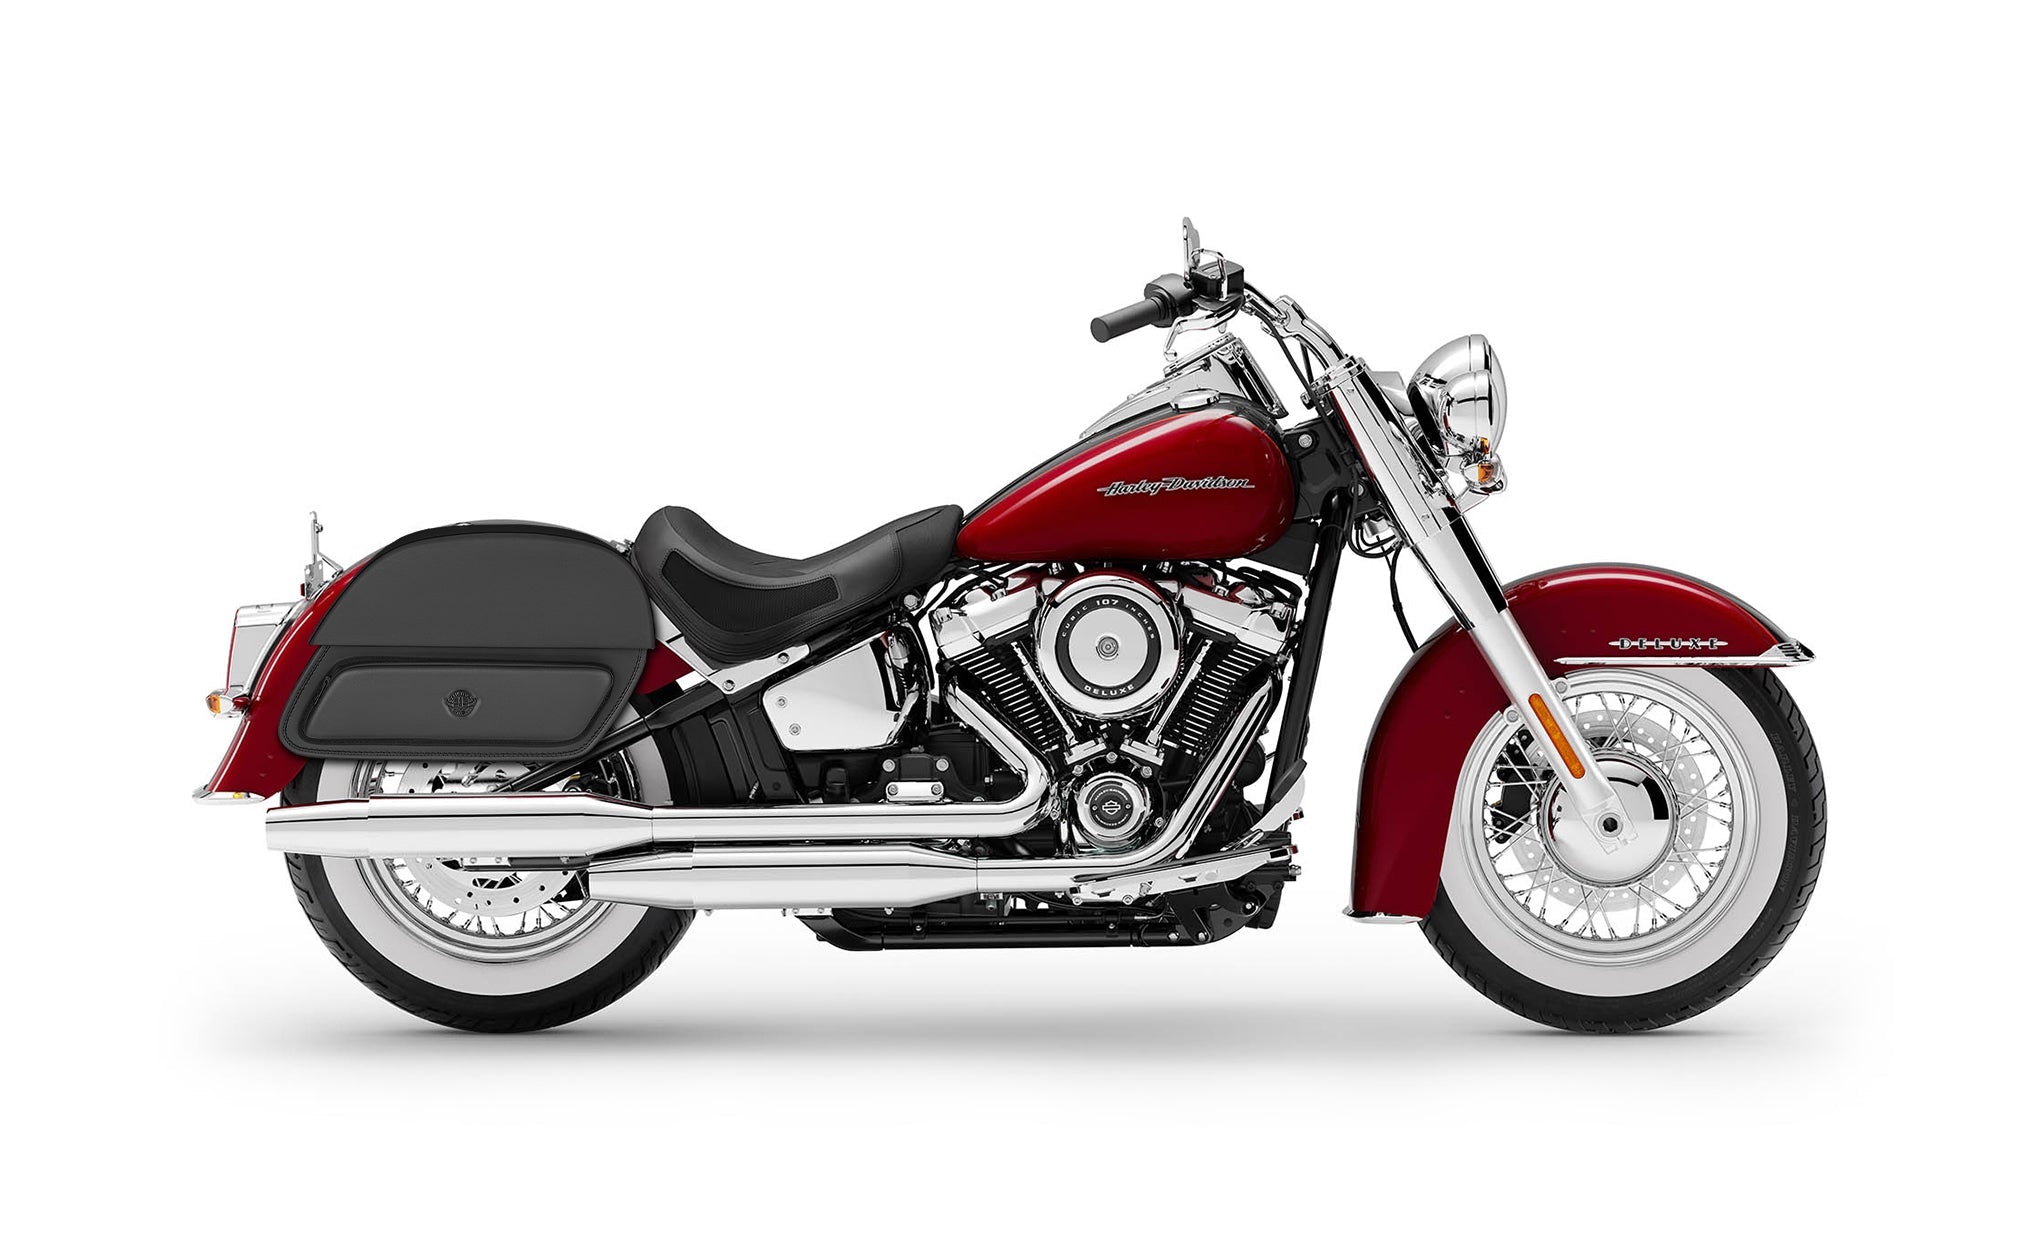 Viking Pantheon Medium Leather Motorcycle Saddlebags For Harley Davidson Softail Deluxe Flstn I on Bike Photo @expand